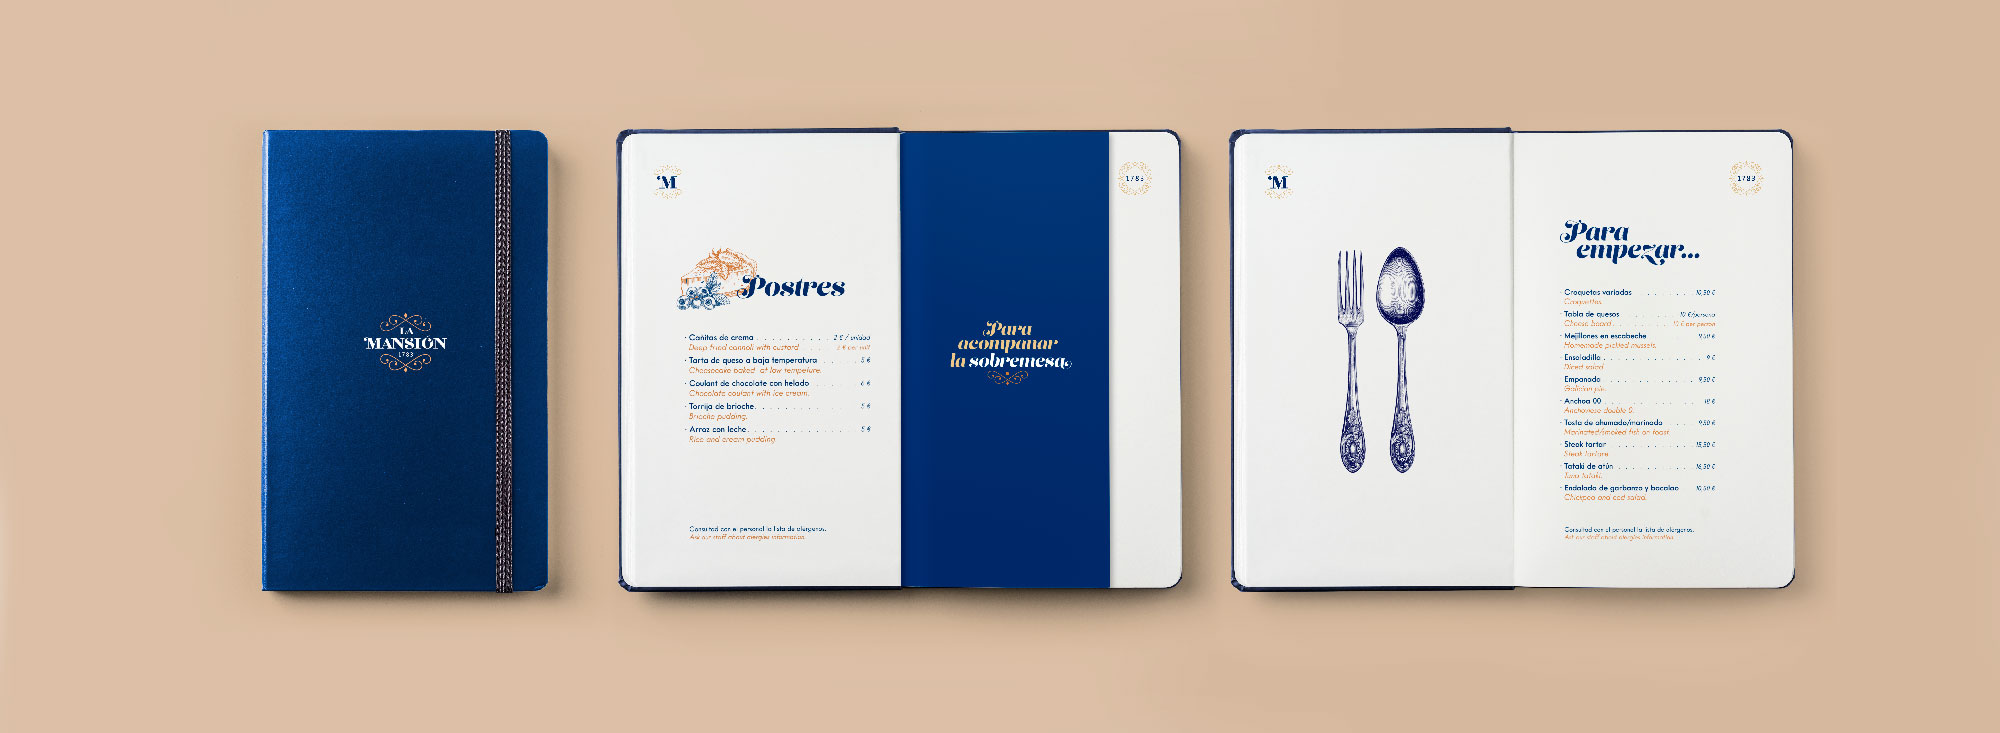 Diseño de carta de restaurante La Mansión de A Coruña